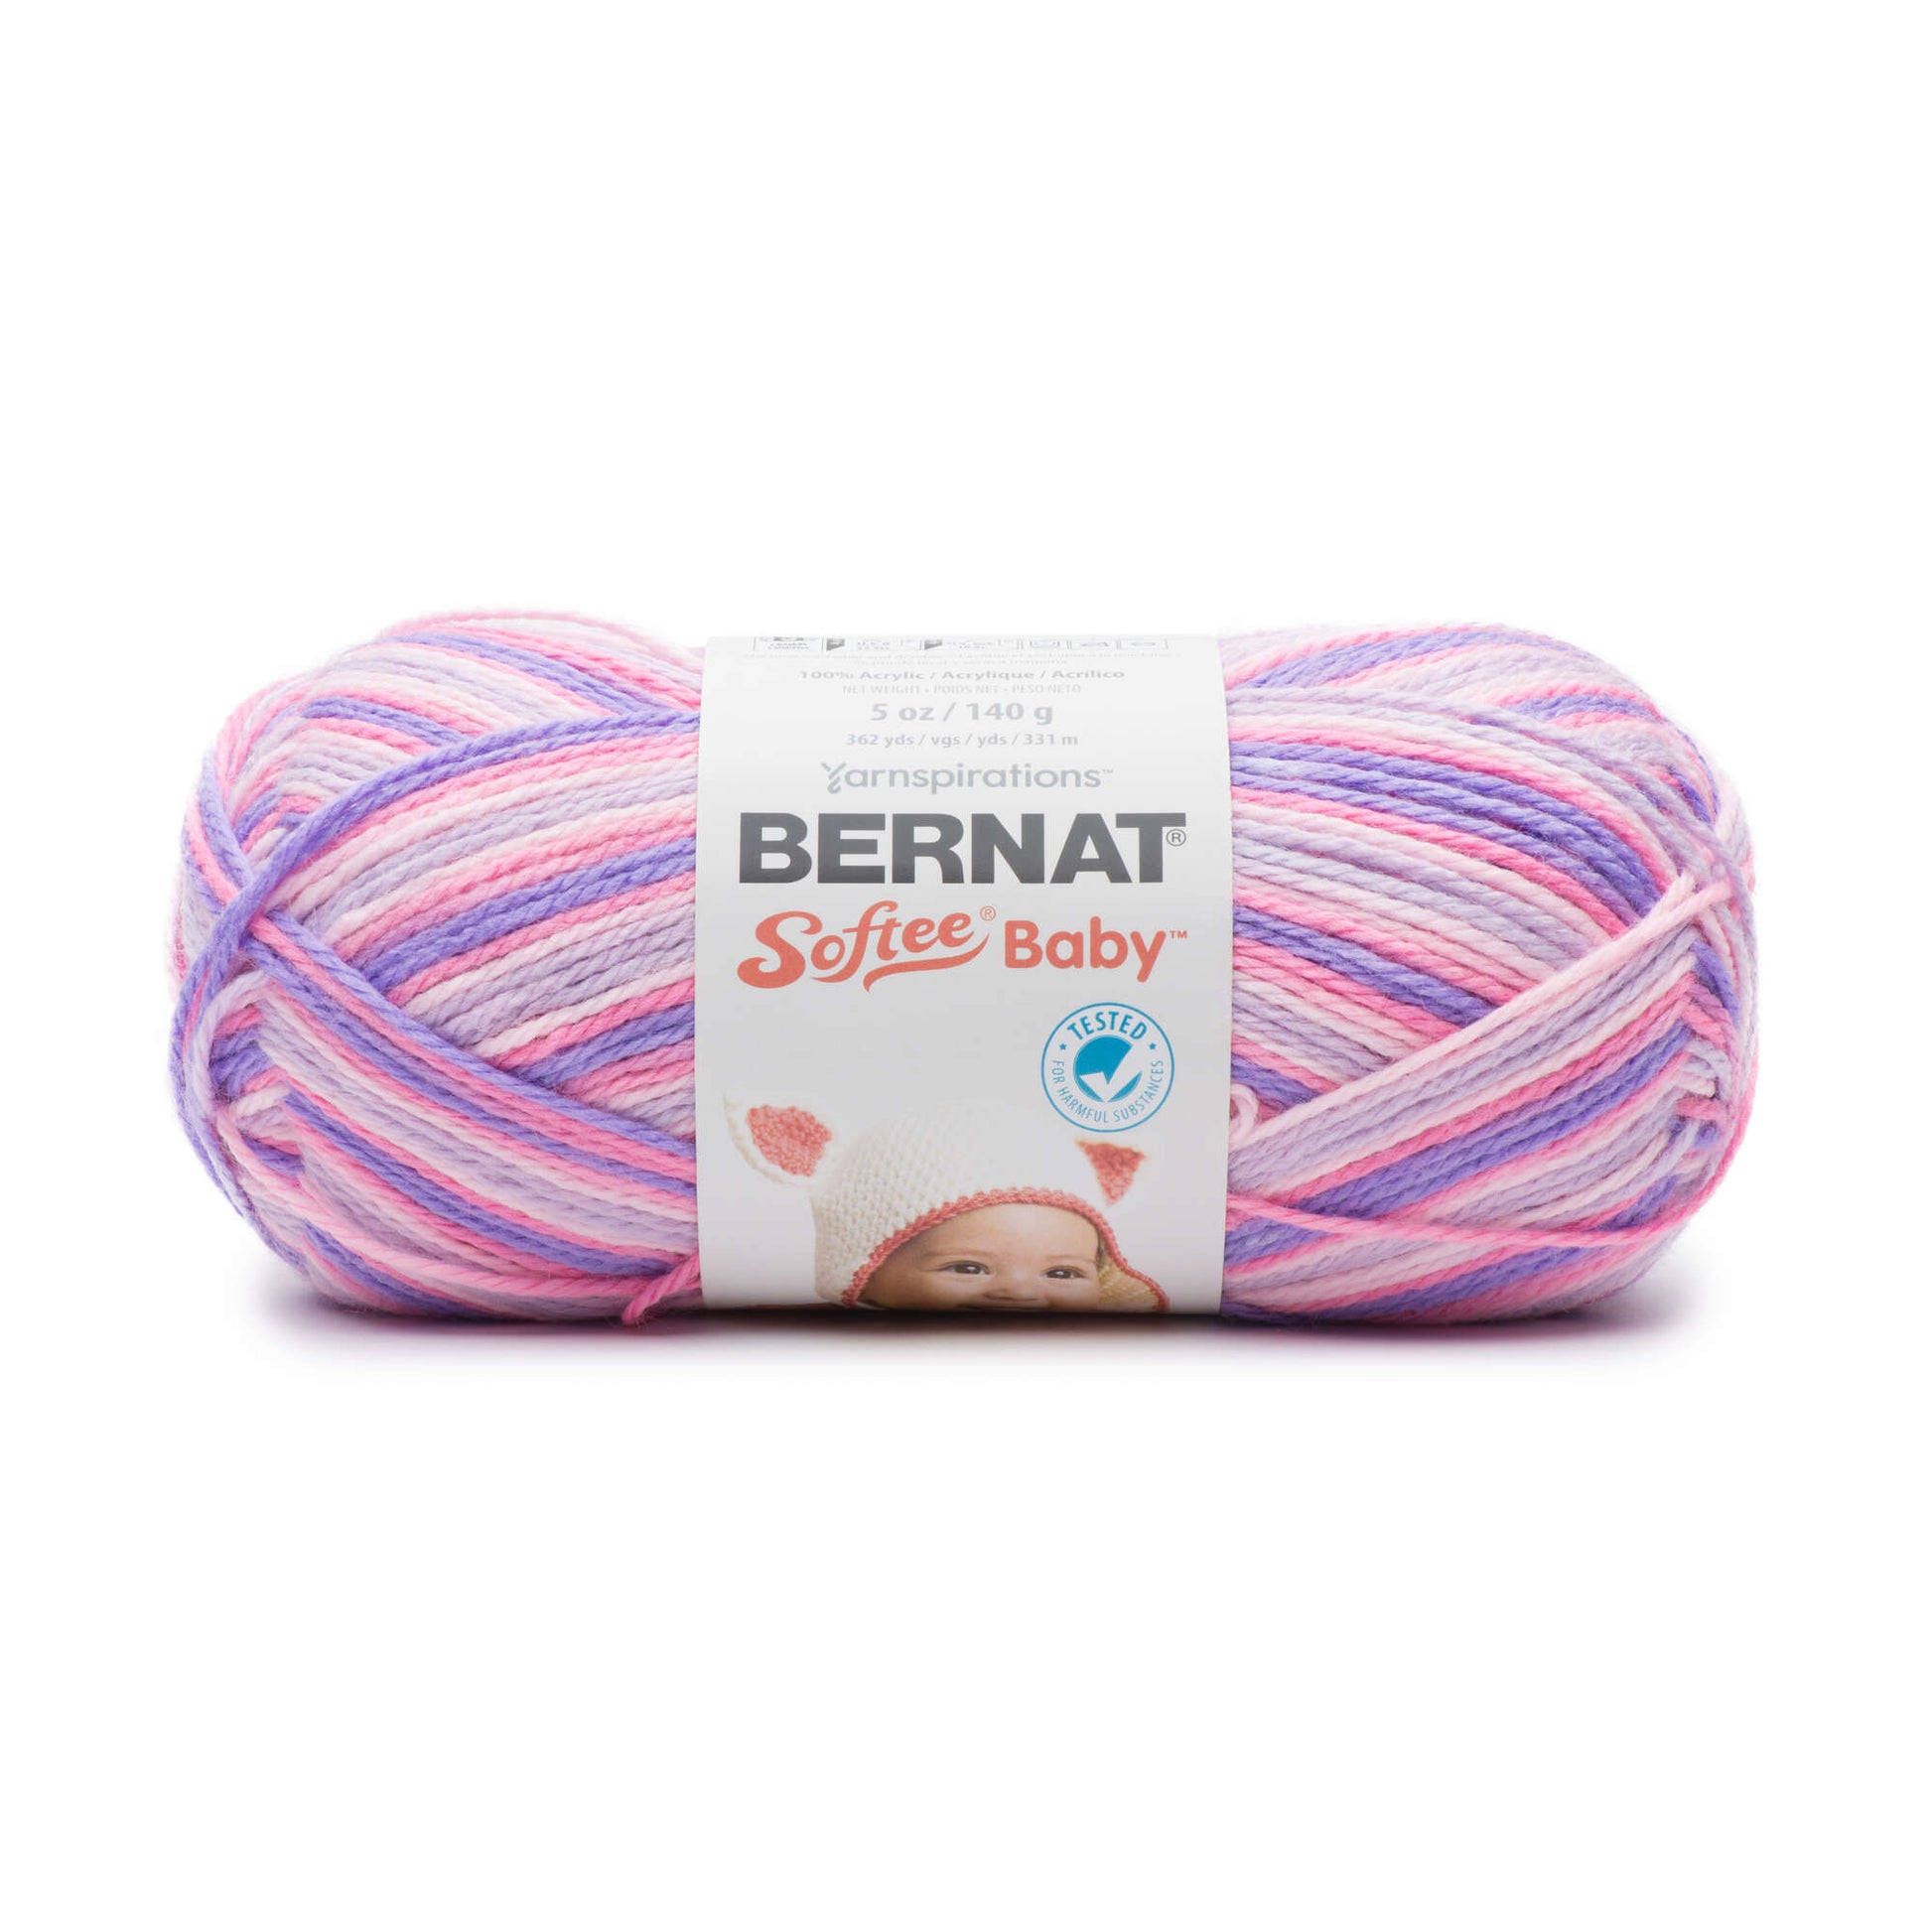 Bernat Softee Baby Variegates Yarn - Discontinued Shades